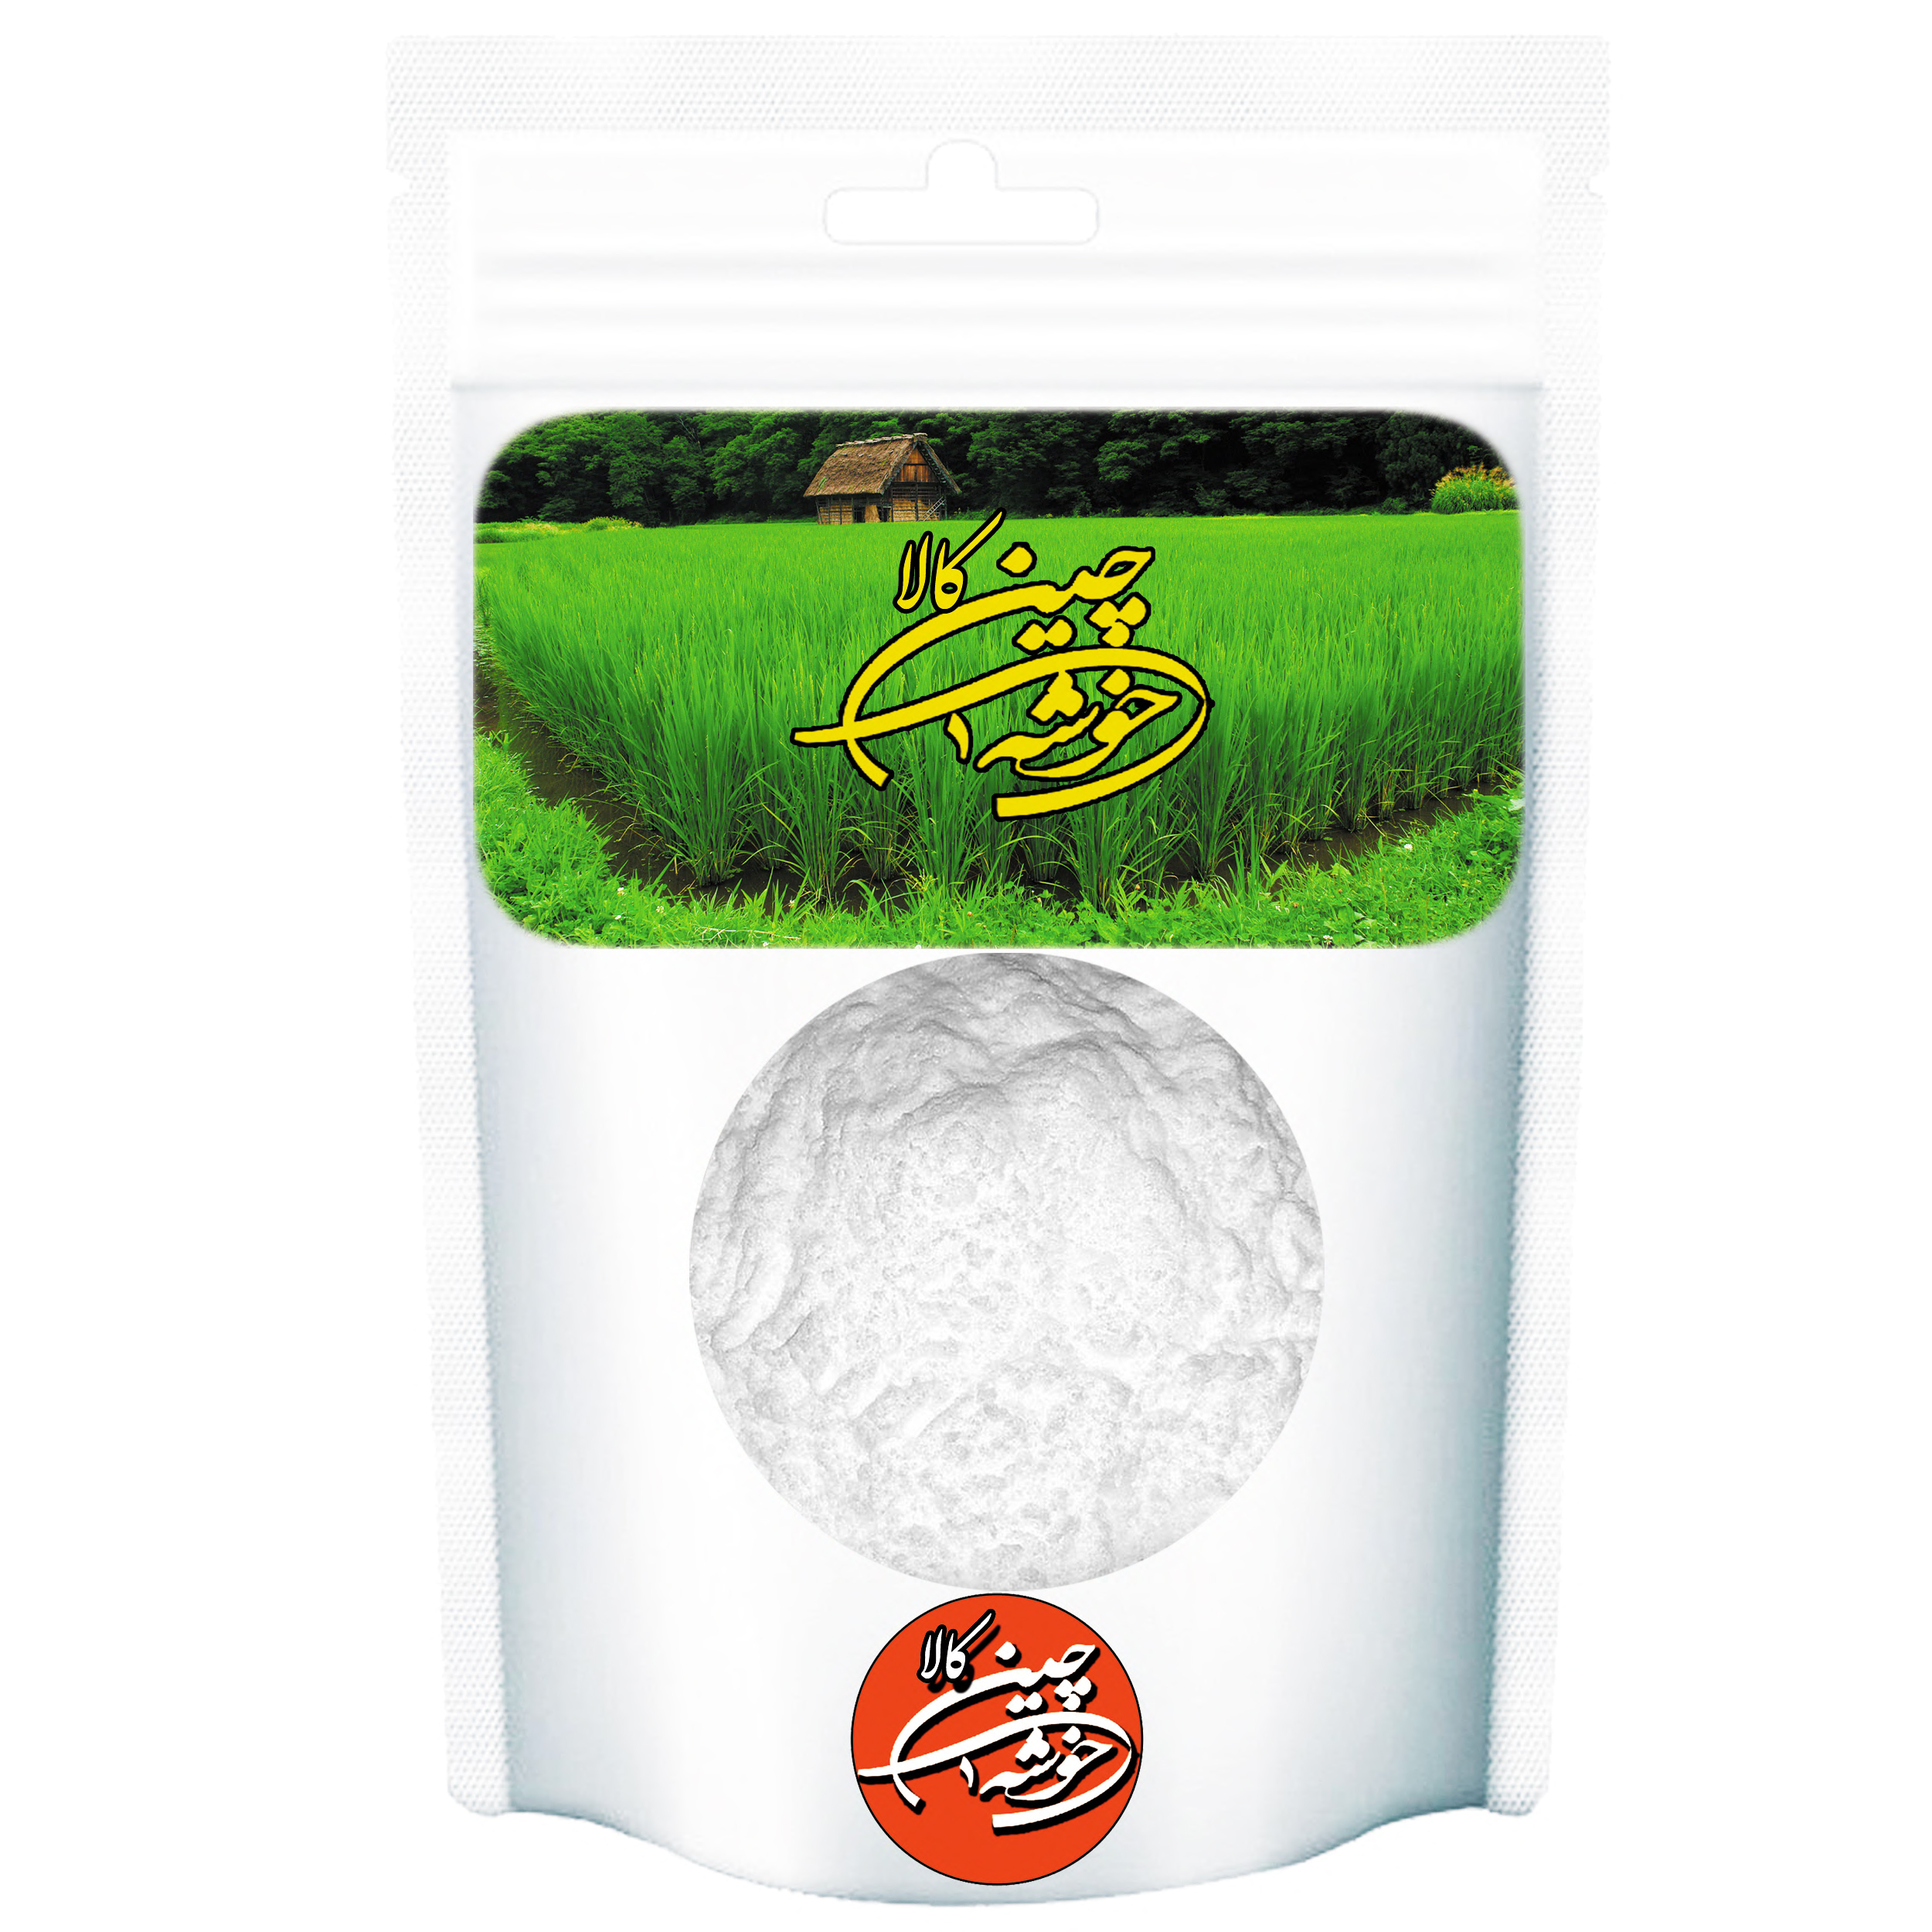 جوش شیرین خوشه چین کالا - 1000 گرم